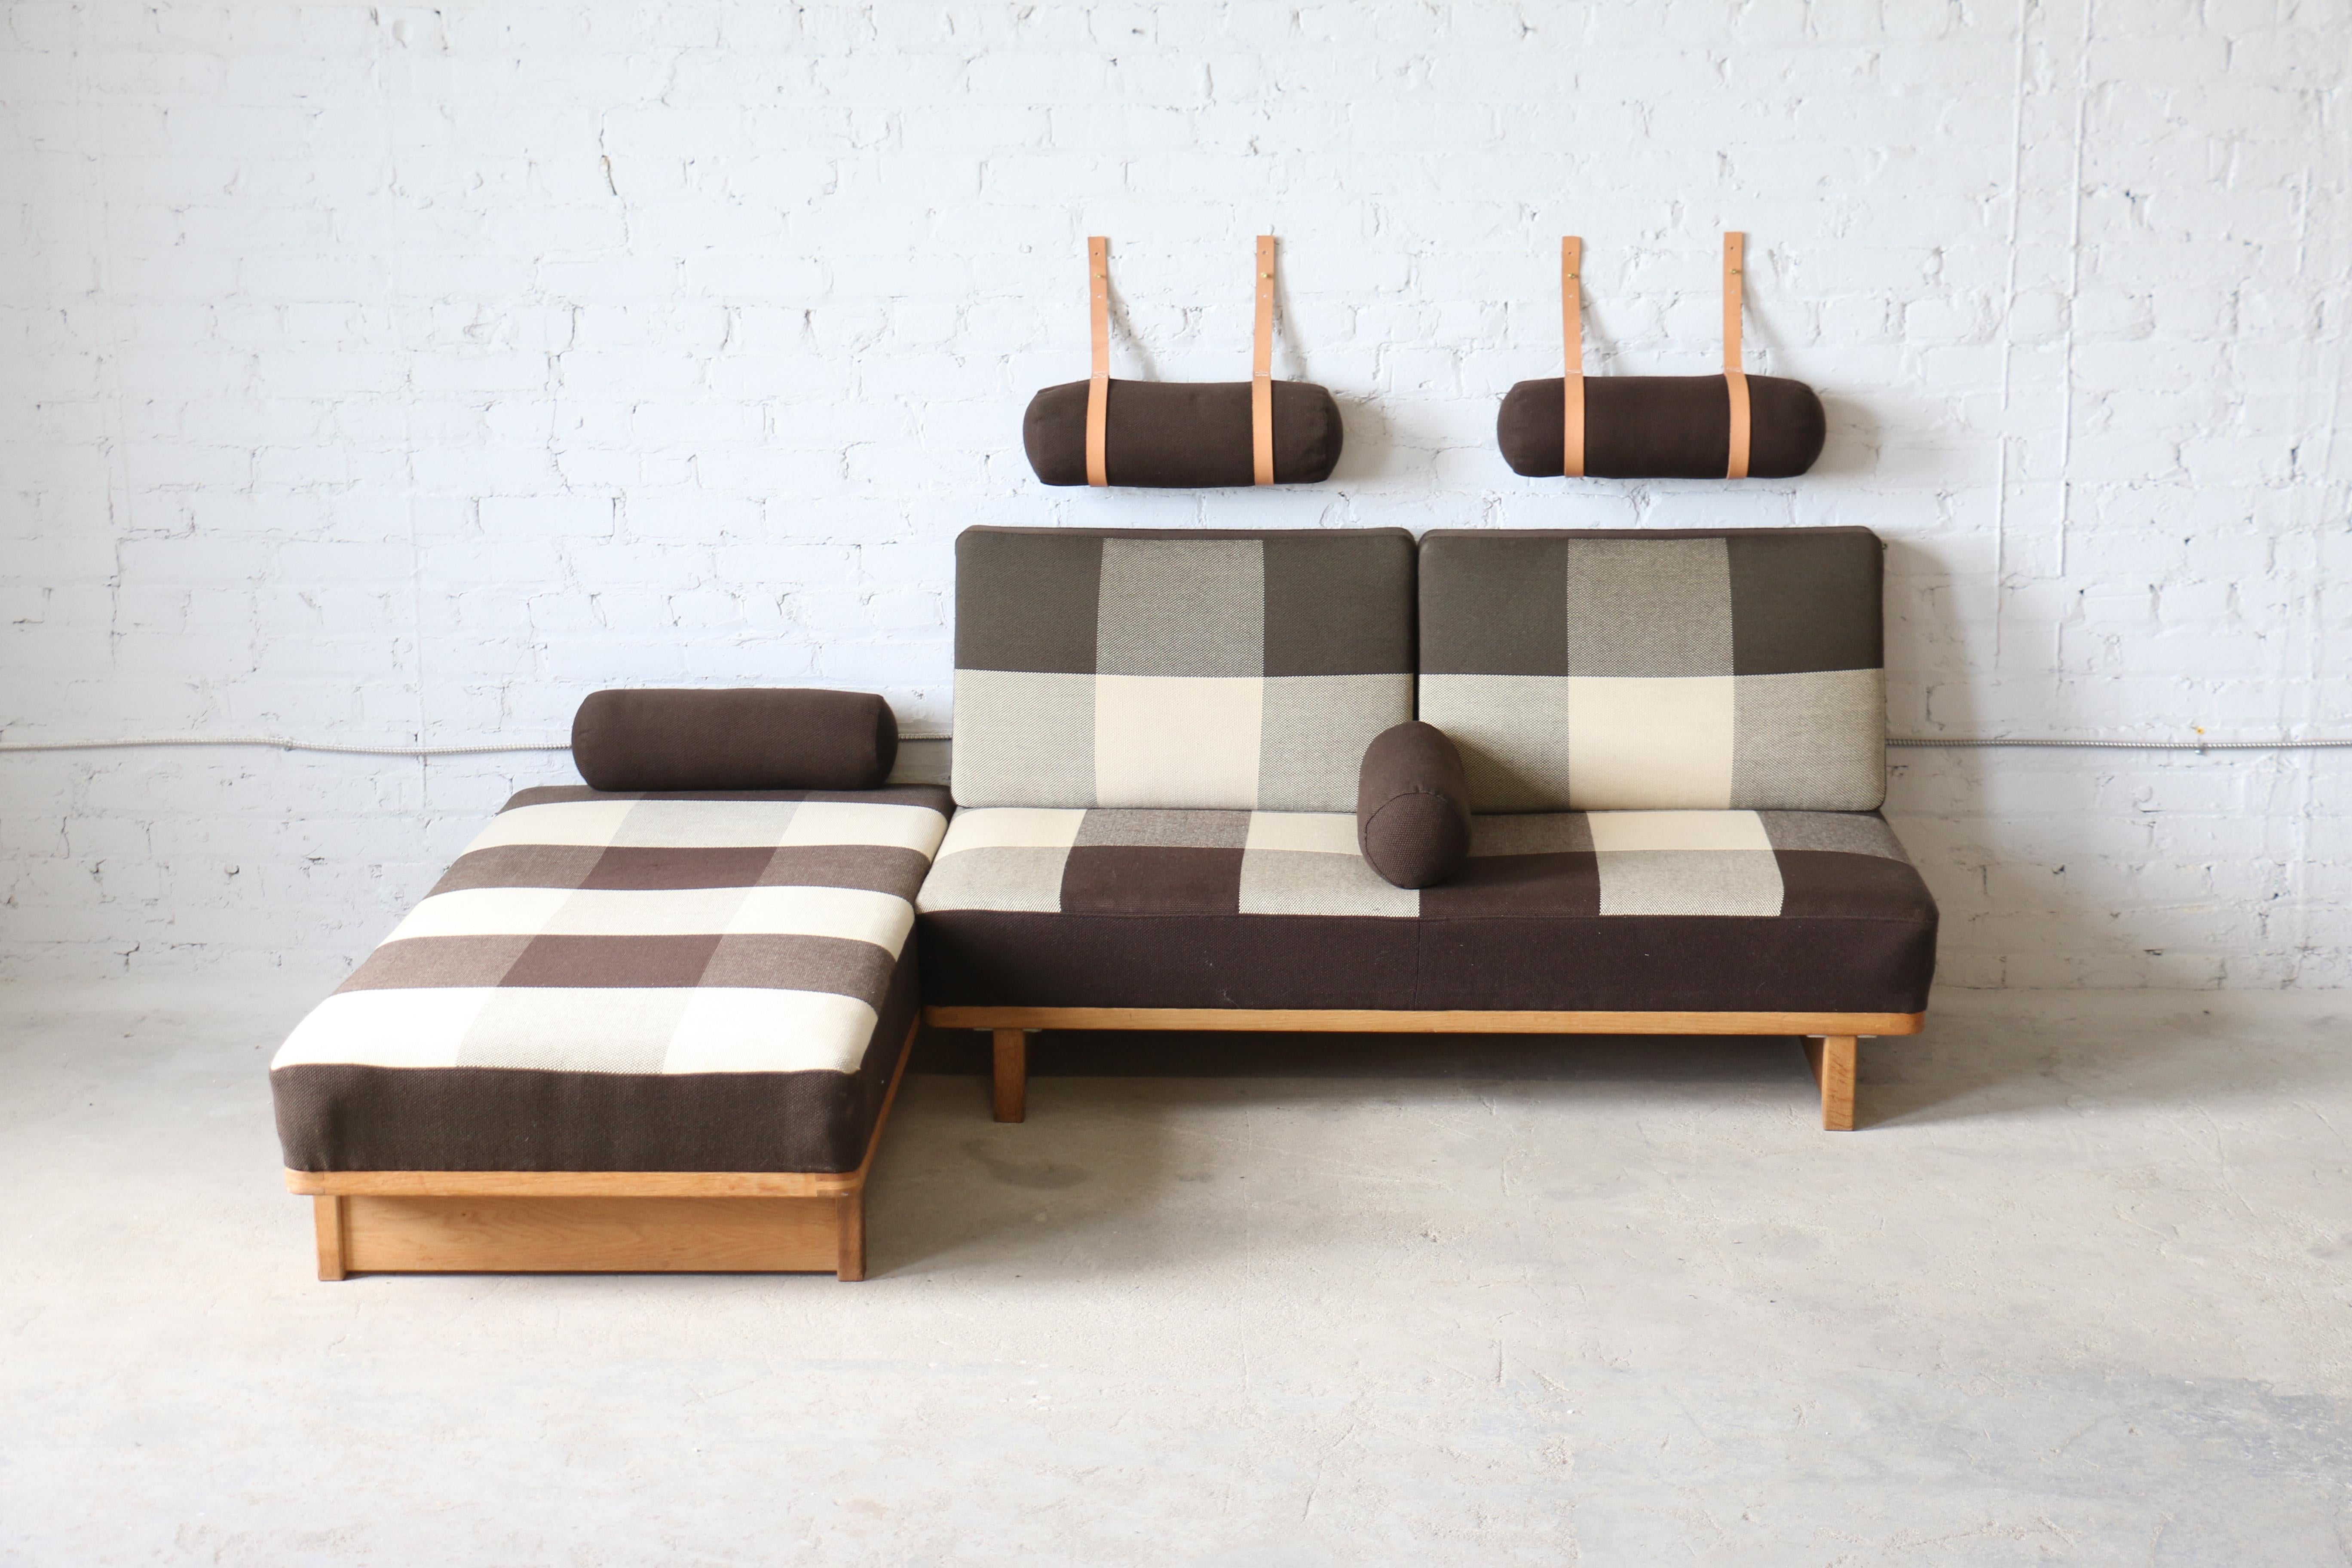 Ein seltenes Paar Sofas/Tagesbetten, entworfen von Børge Mogensen für Fredericia A/S. Ursprünglich in einer größeren Version für Erhard Rasmussen entworfen, ist diese fantastische Sofagarnitur wirklich einzigartig. Es trägt den Spitznamen